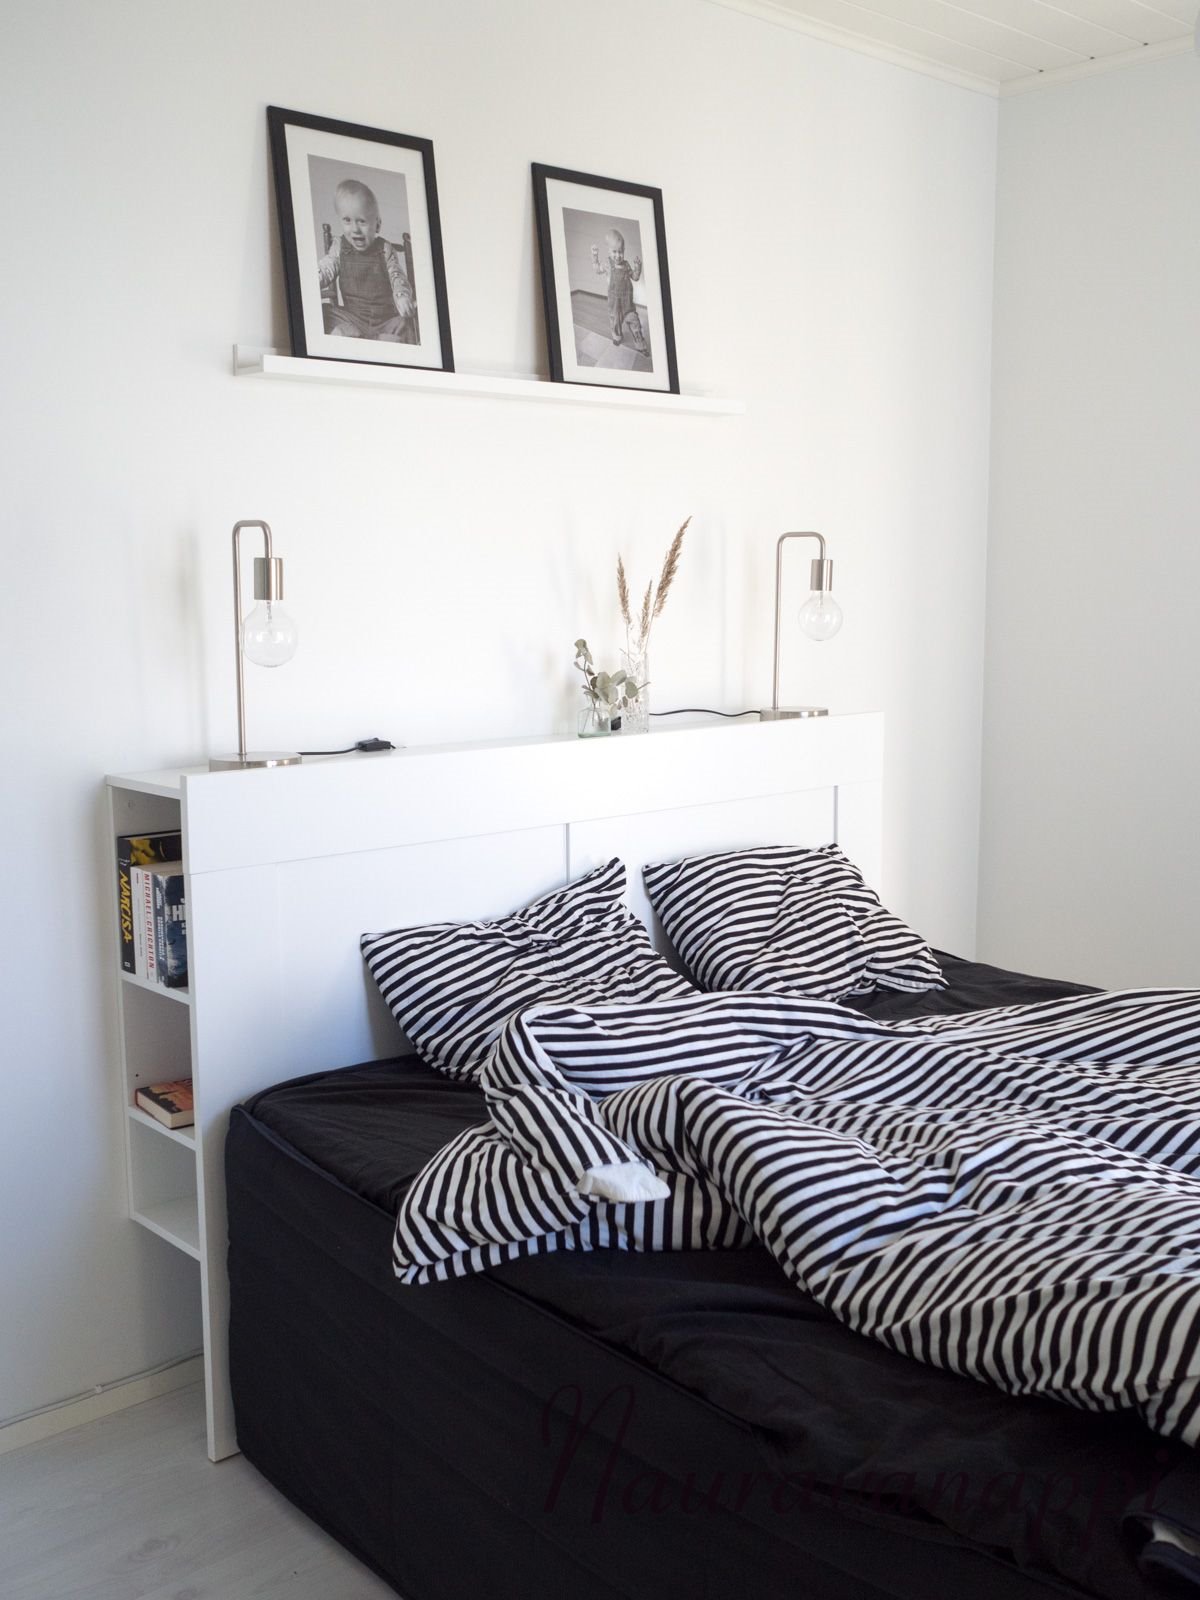 Cama con cabecero con almacenaje modelo Brimnes de Ikea en un dormitorio moderno